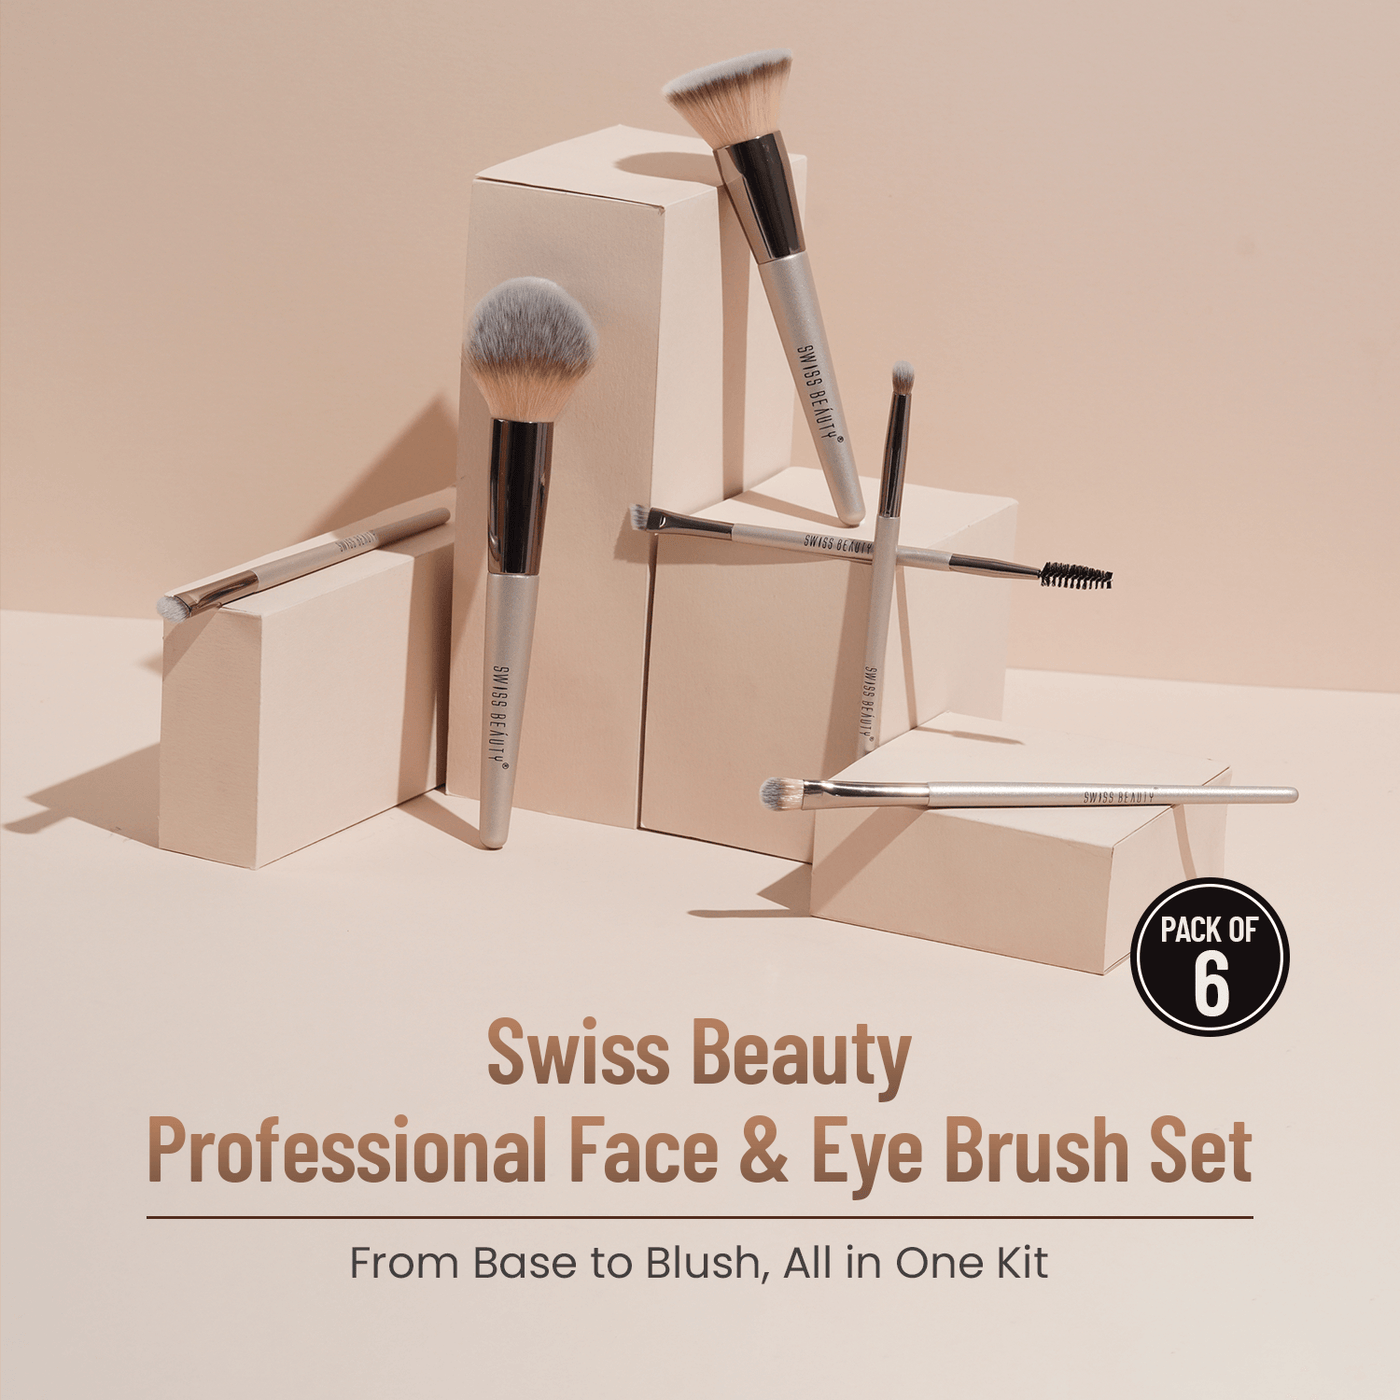 Professional Face & Eye Brush Set Makeup kIt